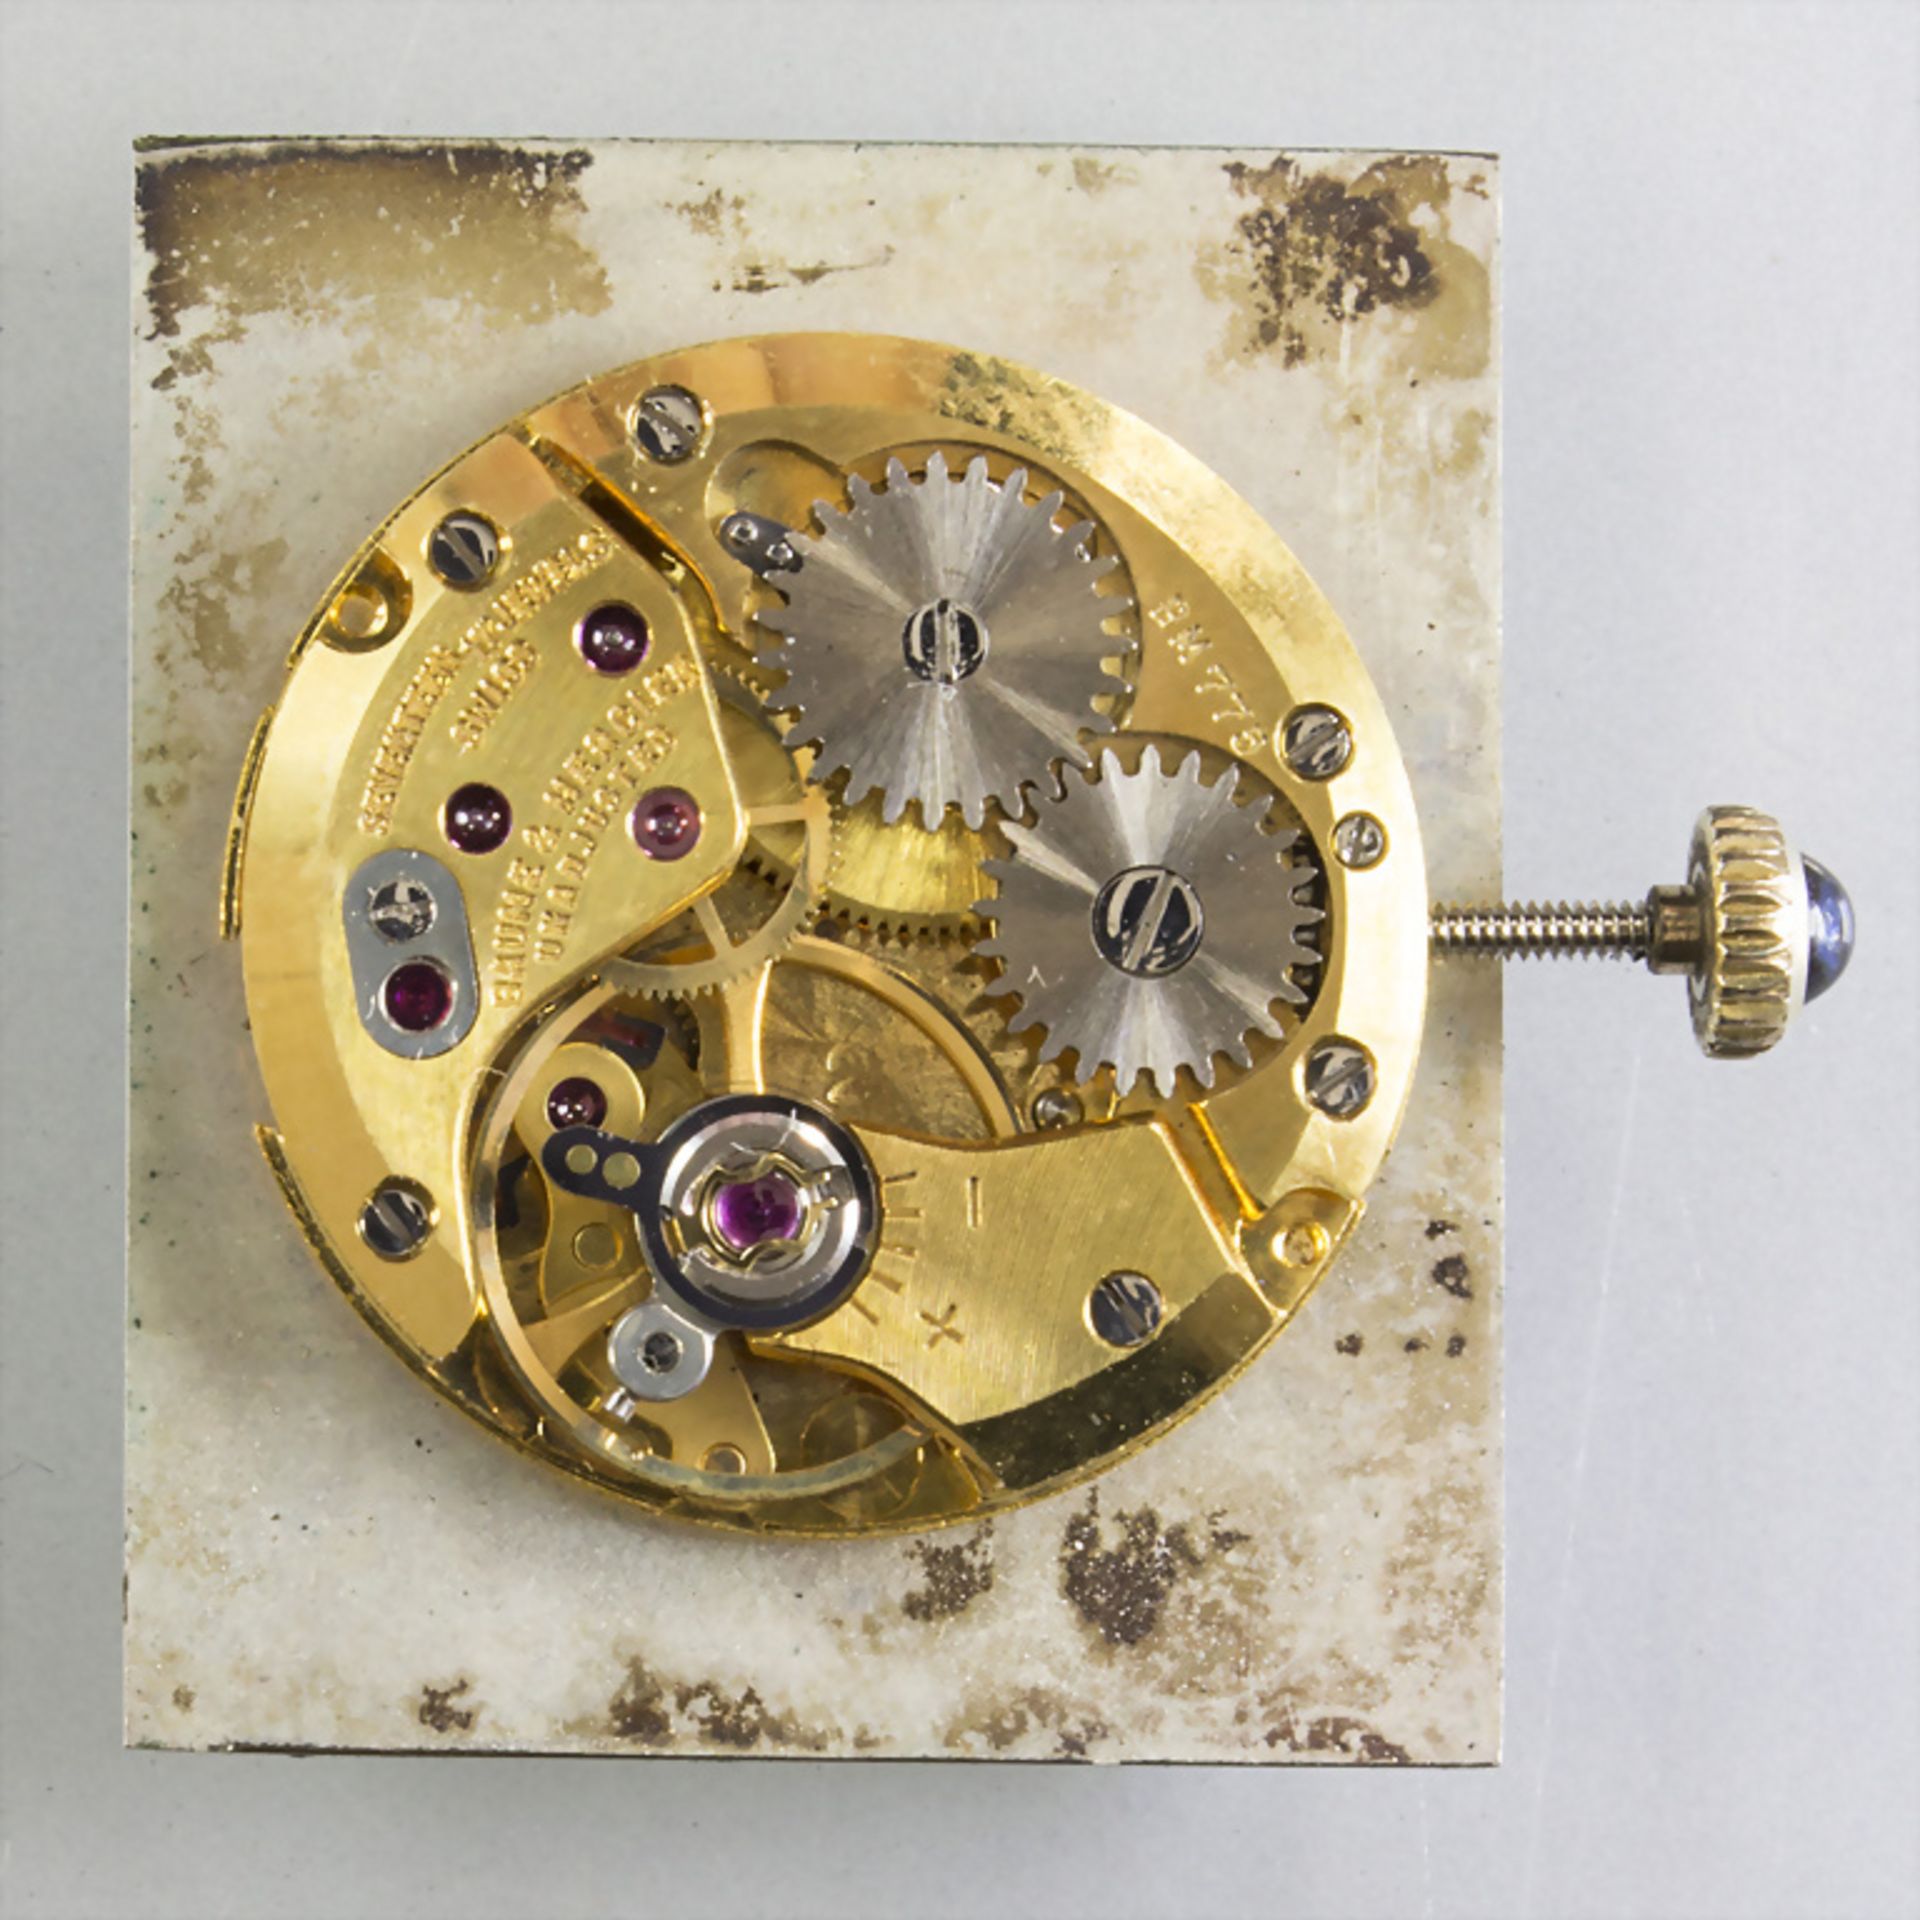 Herrenarnbanduhr / A men's 18k gold wrist watch, Baume et Mercier, Schweiz, um 1990 - Bild 2 aus 4